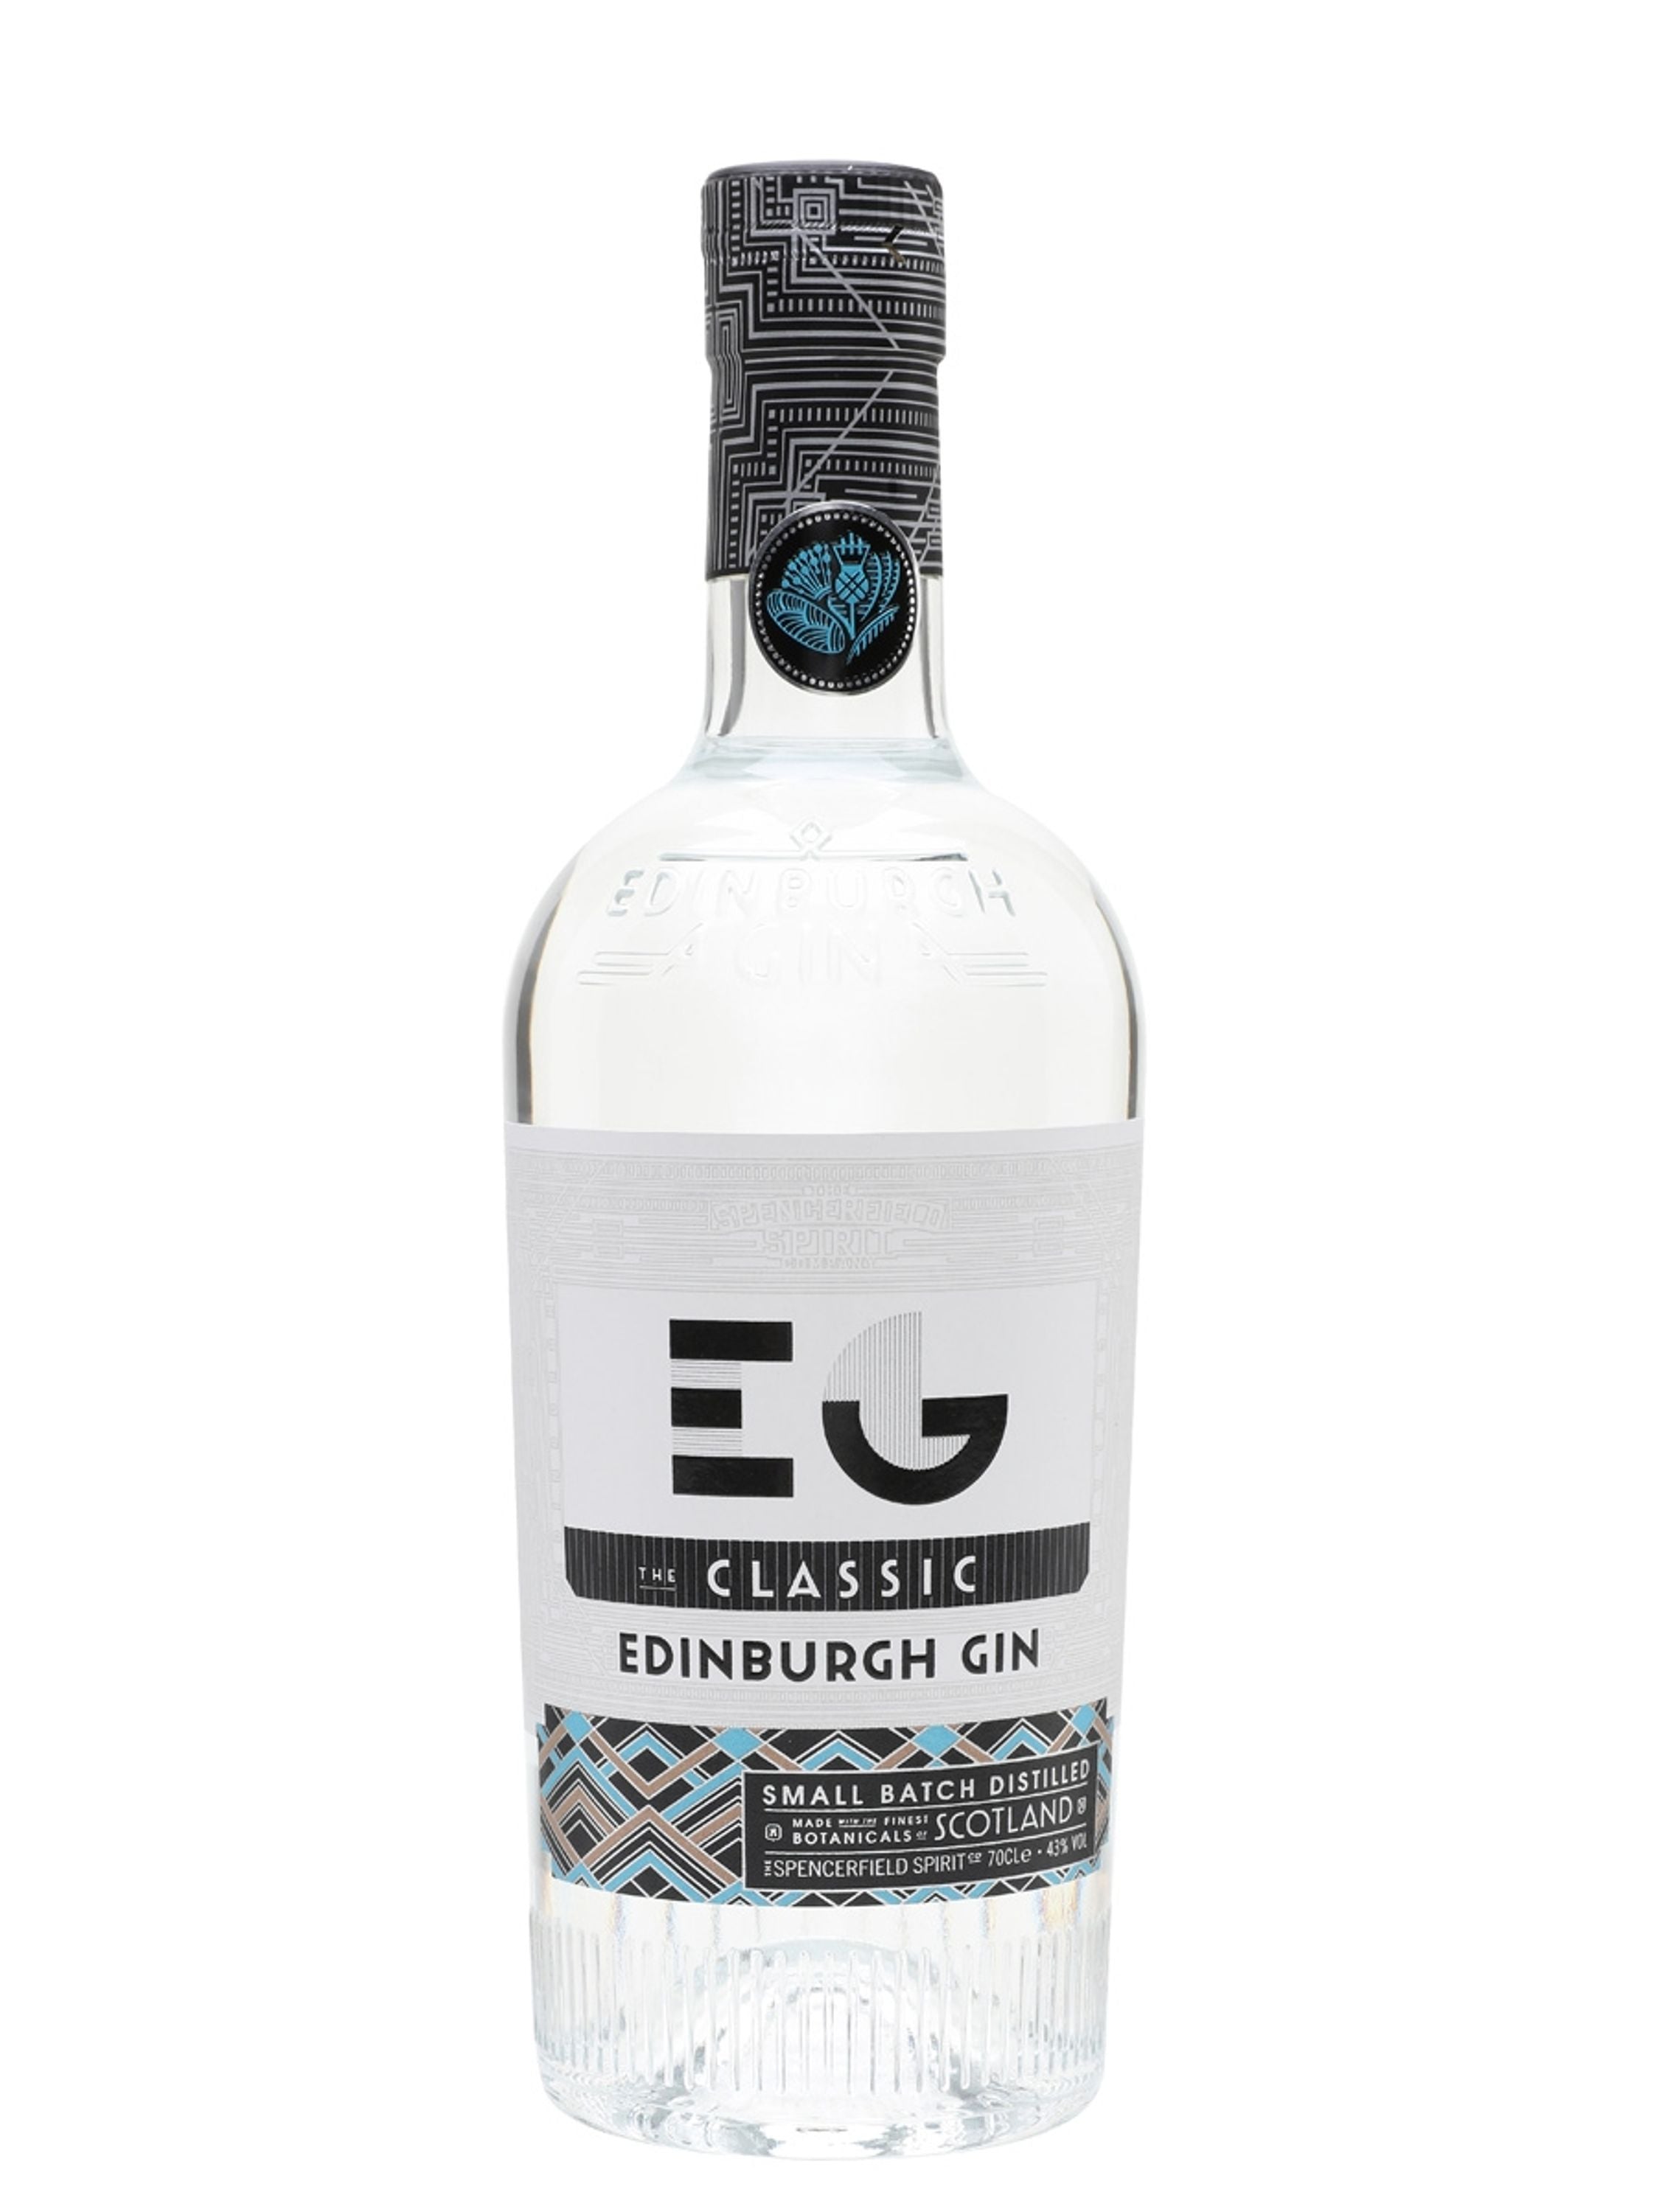 Edinburgh Gin 0.7l, alc. 43% by volume